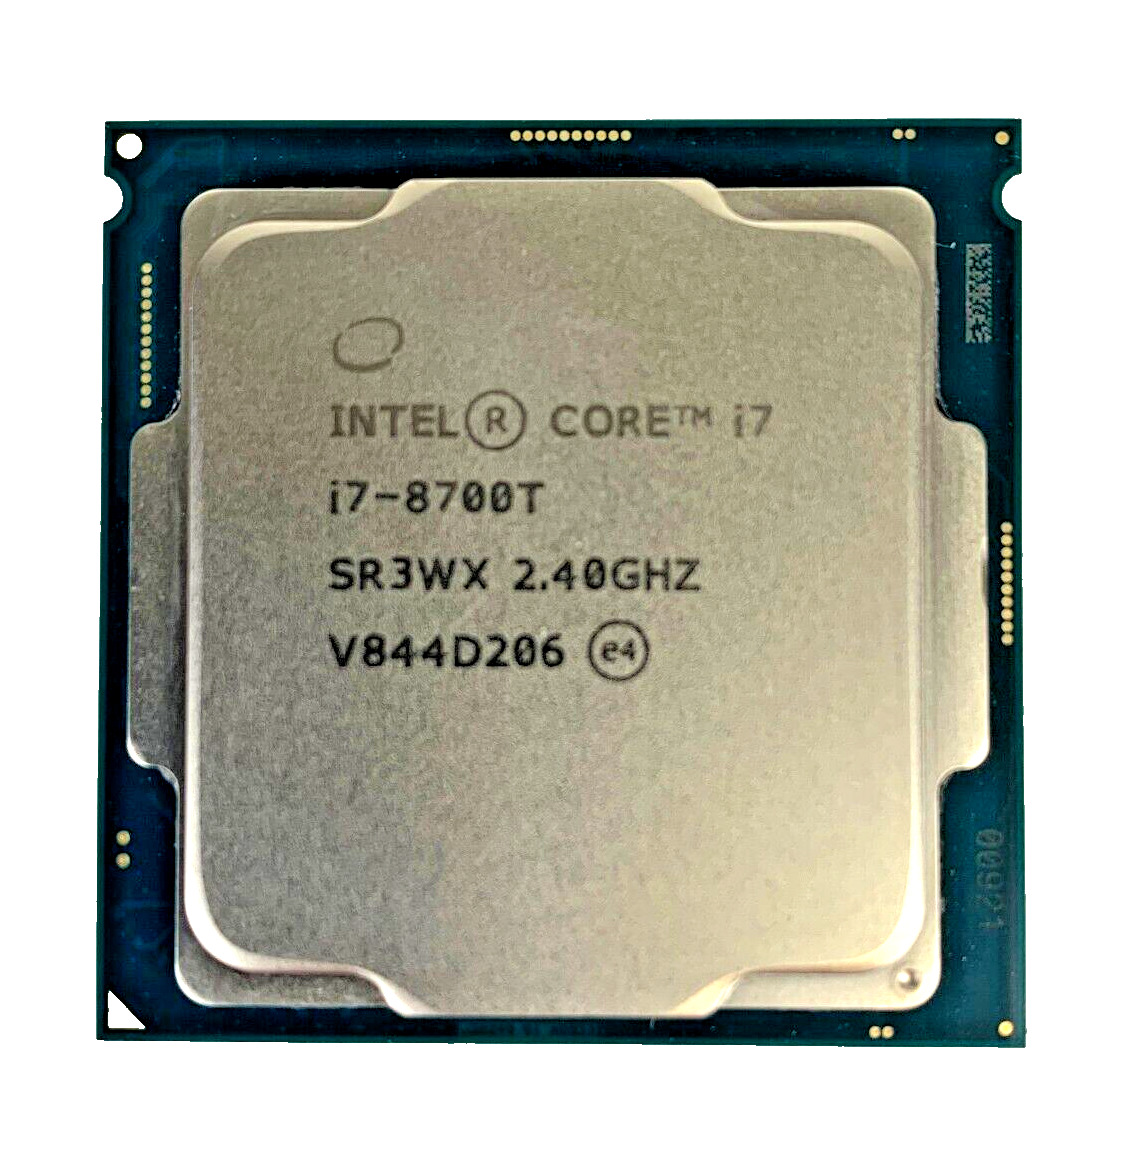 (Lot of 2) Intel Core i7-8700T 2.40GHz 6 Core LGA 1151 12MB 8 GT/s SR3WX CPUs